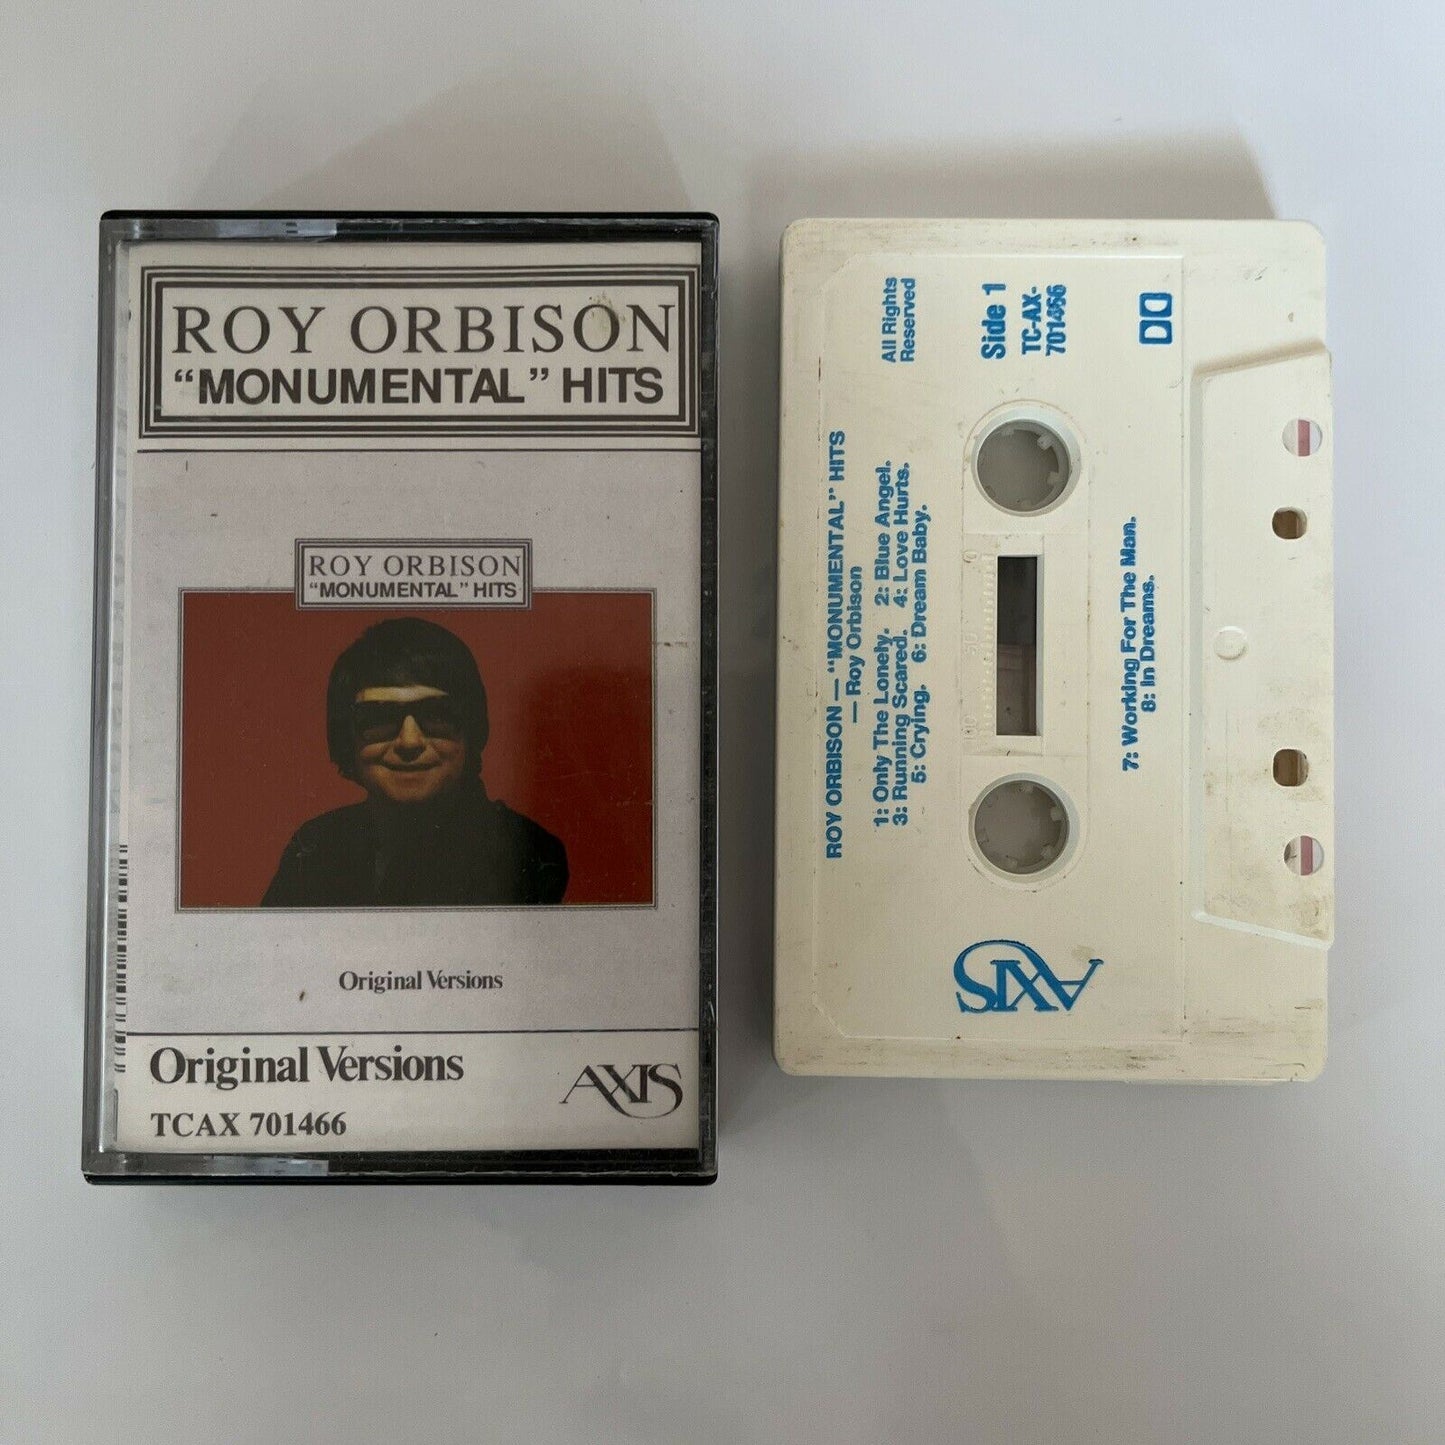 Roy Orbison - Monumental Hits 1989 Cassette Tape